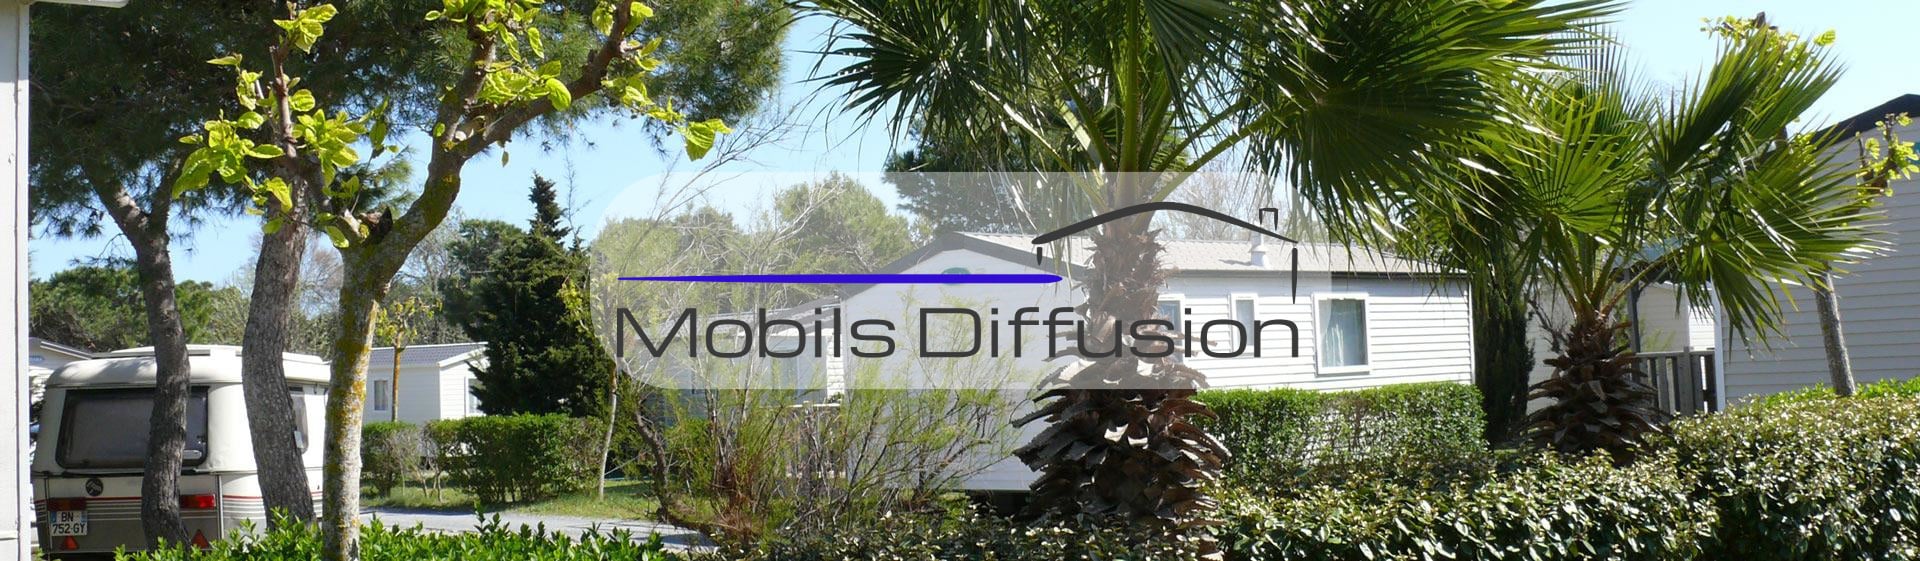 Mobils Diffusion - Terrain pour mobil-home au camping en Occitanie proche de Narbonne